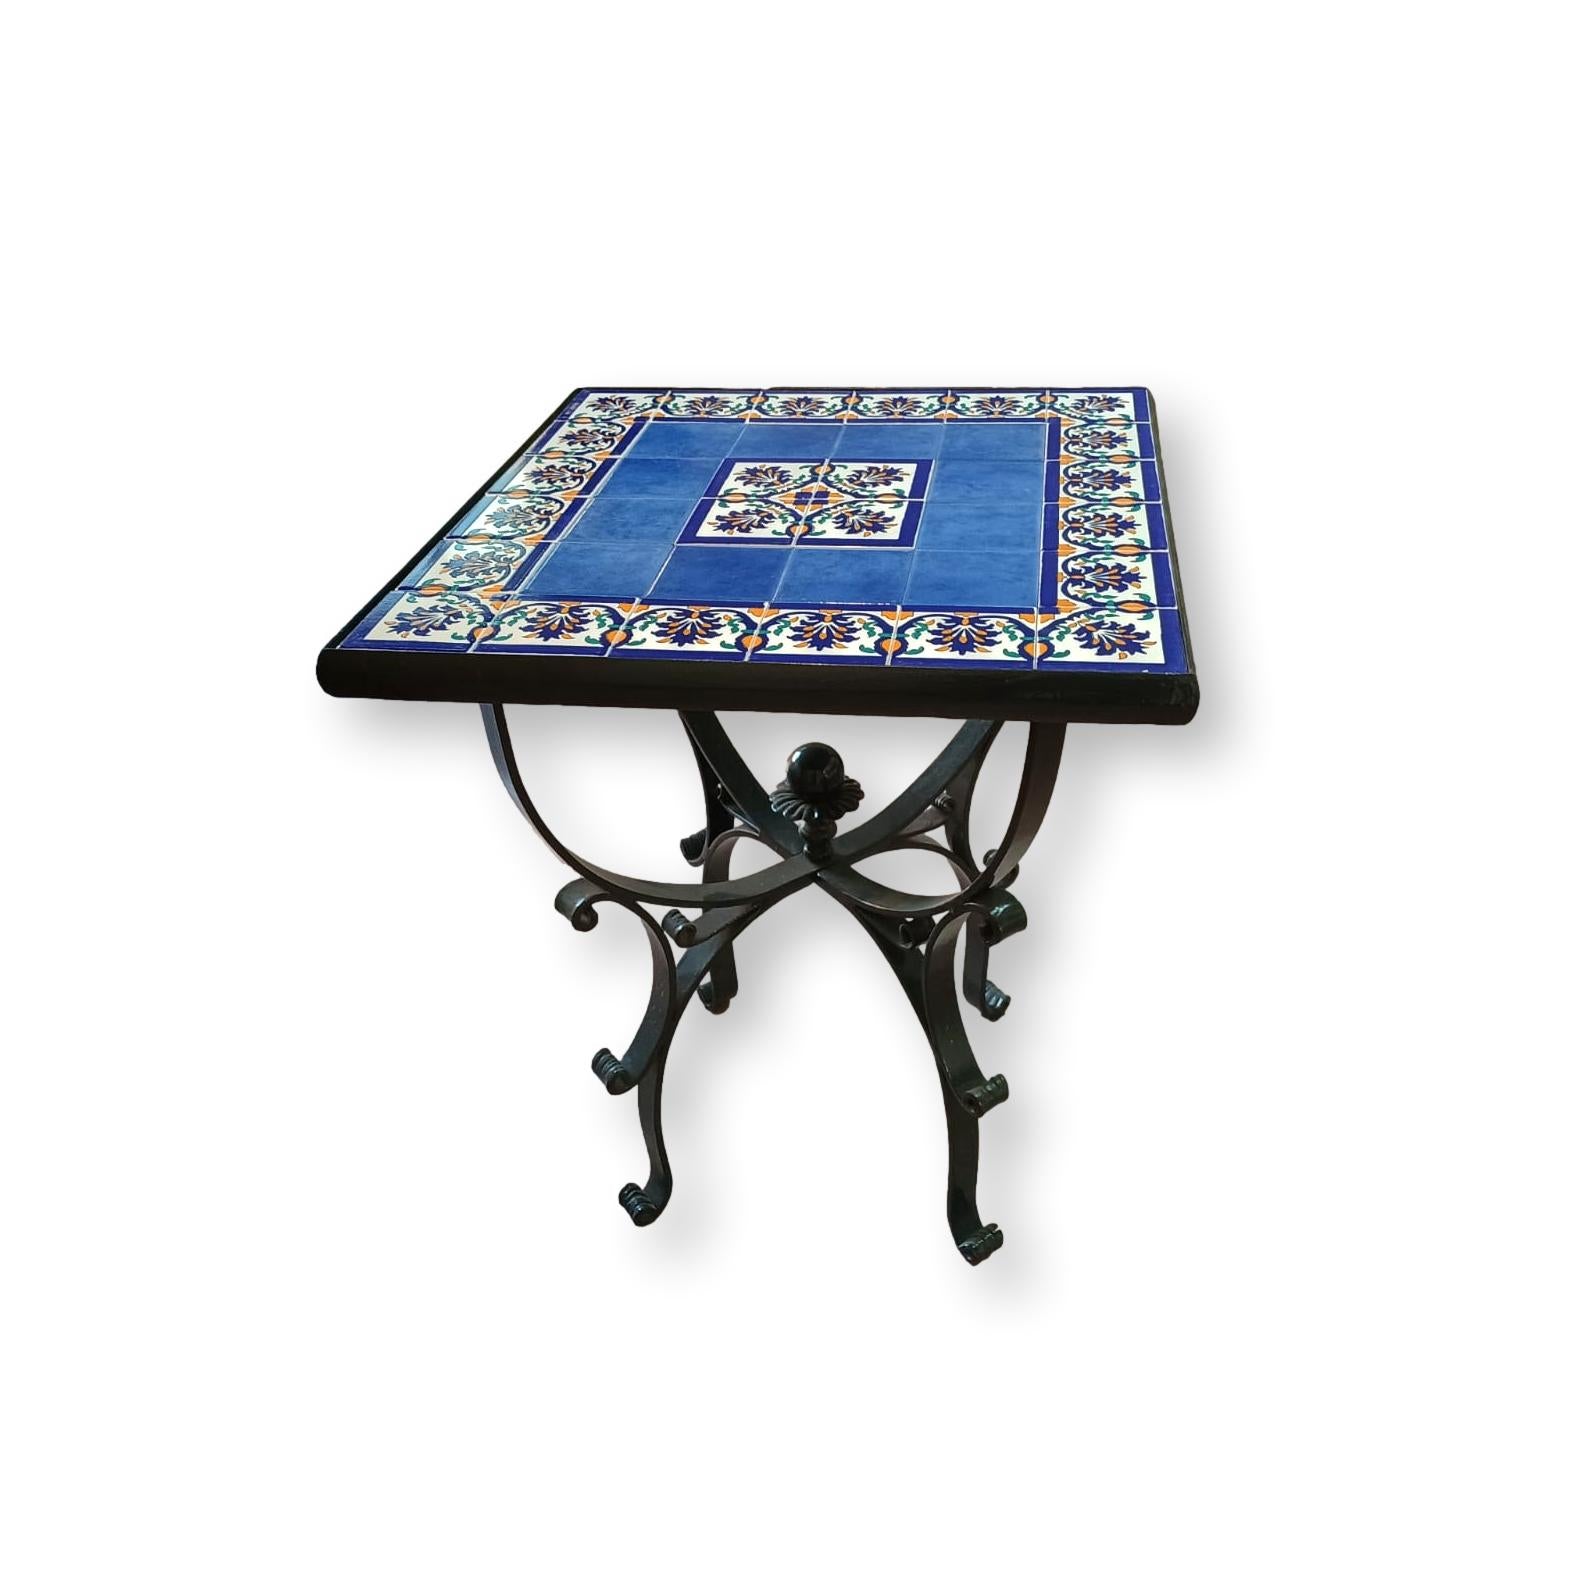 Tavolo quadrato in Ferro battuto - Decori in ceramica fiori fondo blu  - 60x60cm base nera